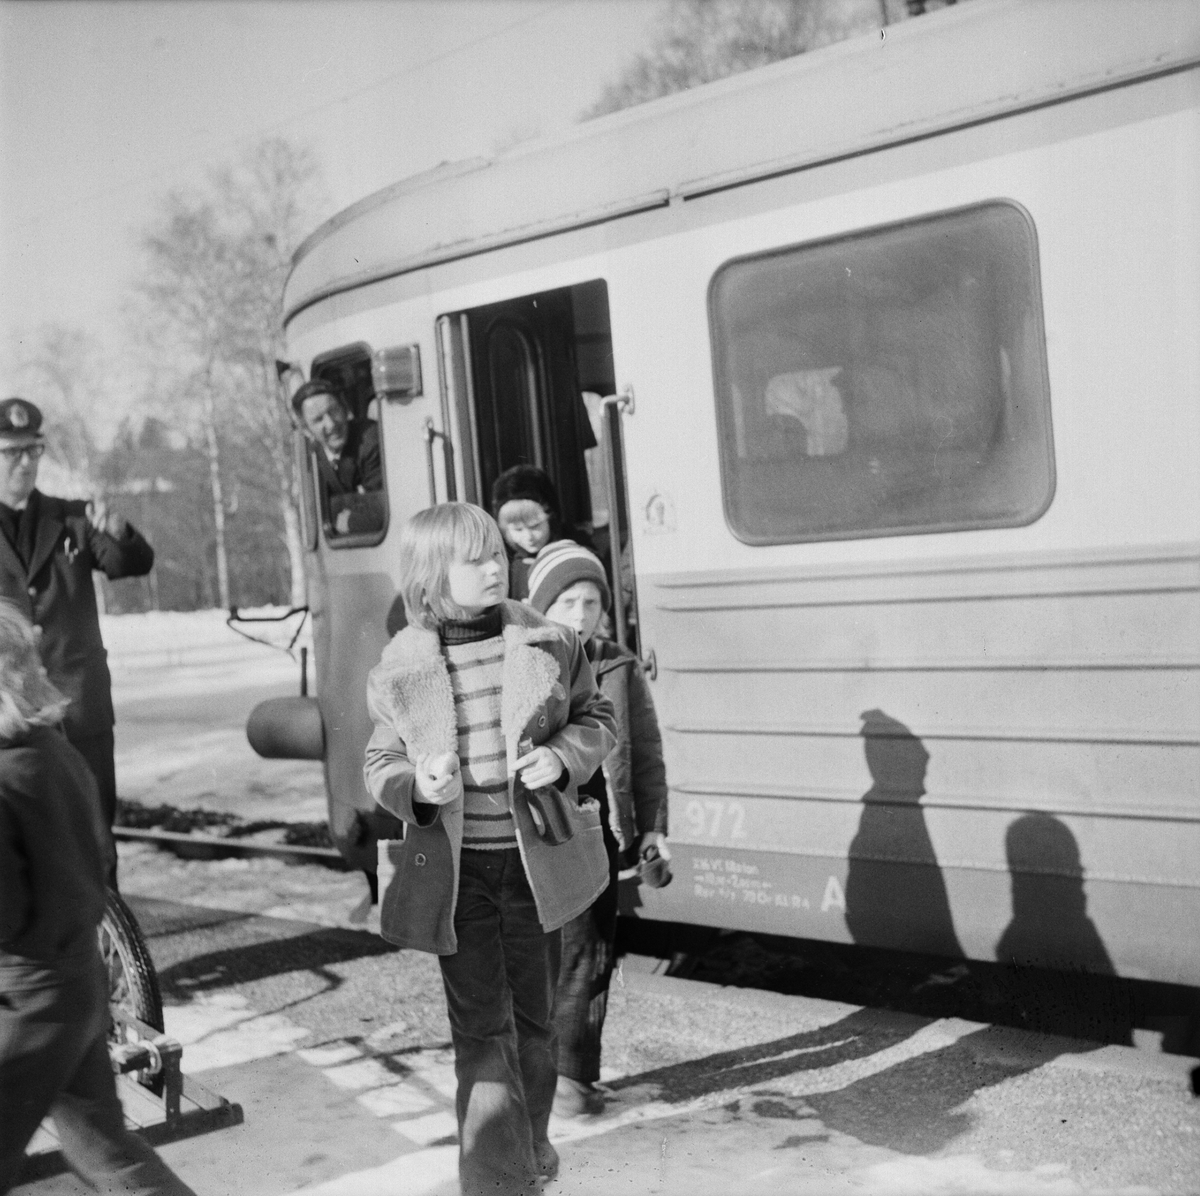 Köpa biljett och åka tåg, populär lektion i Örbyhus, Uppland, mars 1972